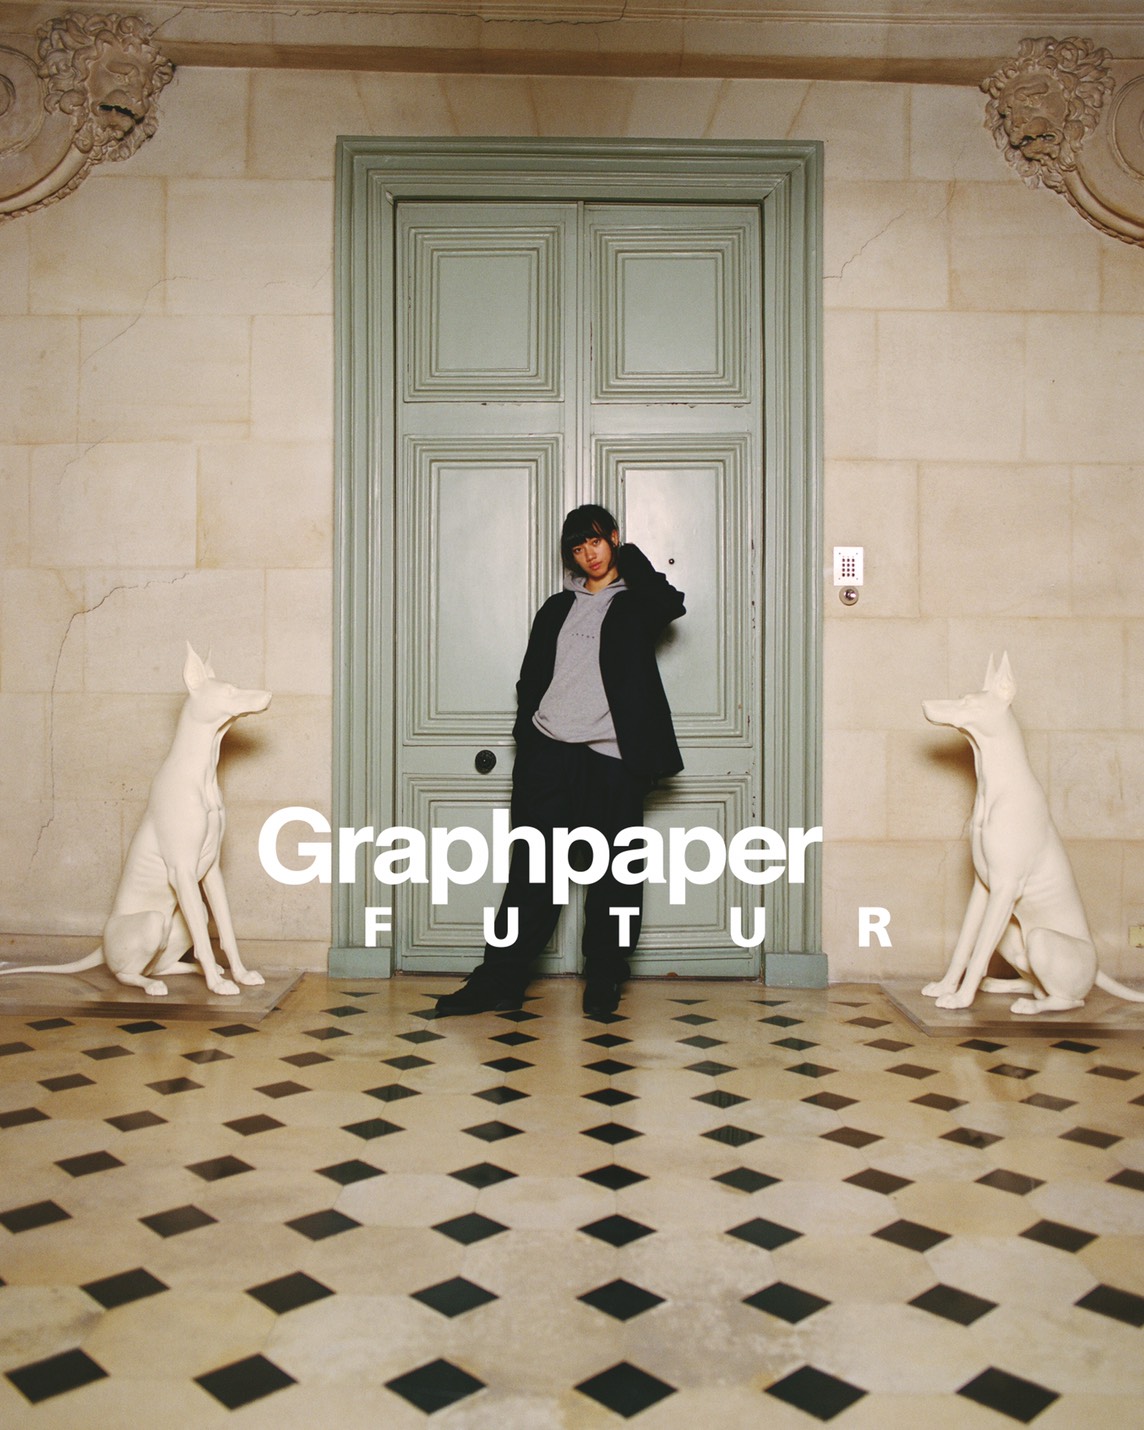 FUTUR × Graphpaperのカプセルコレクションが8月24日に発売